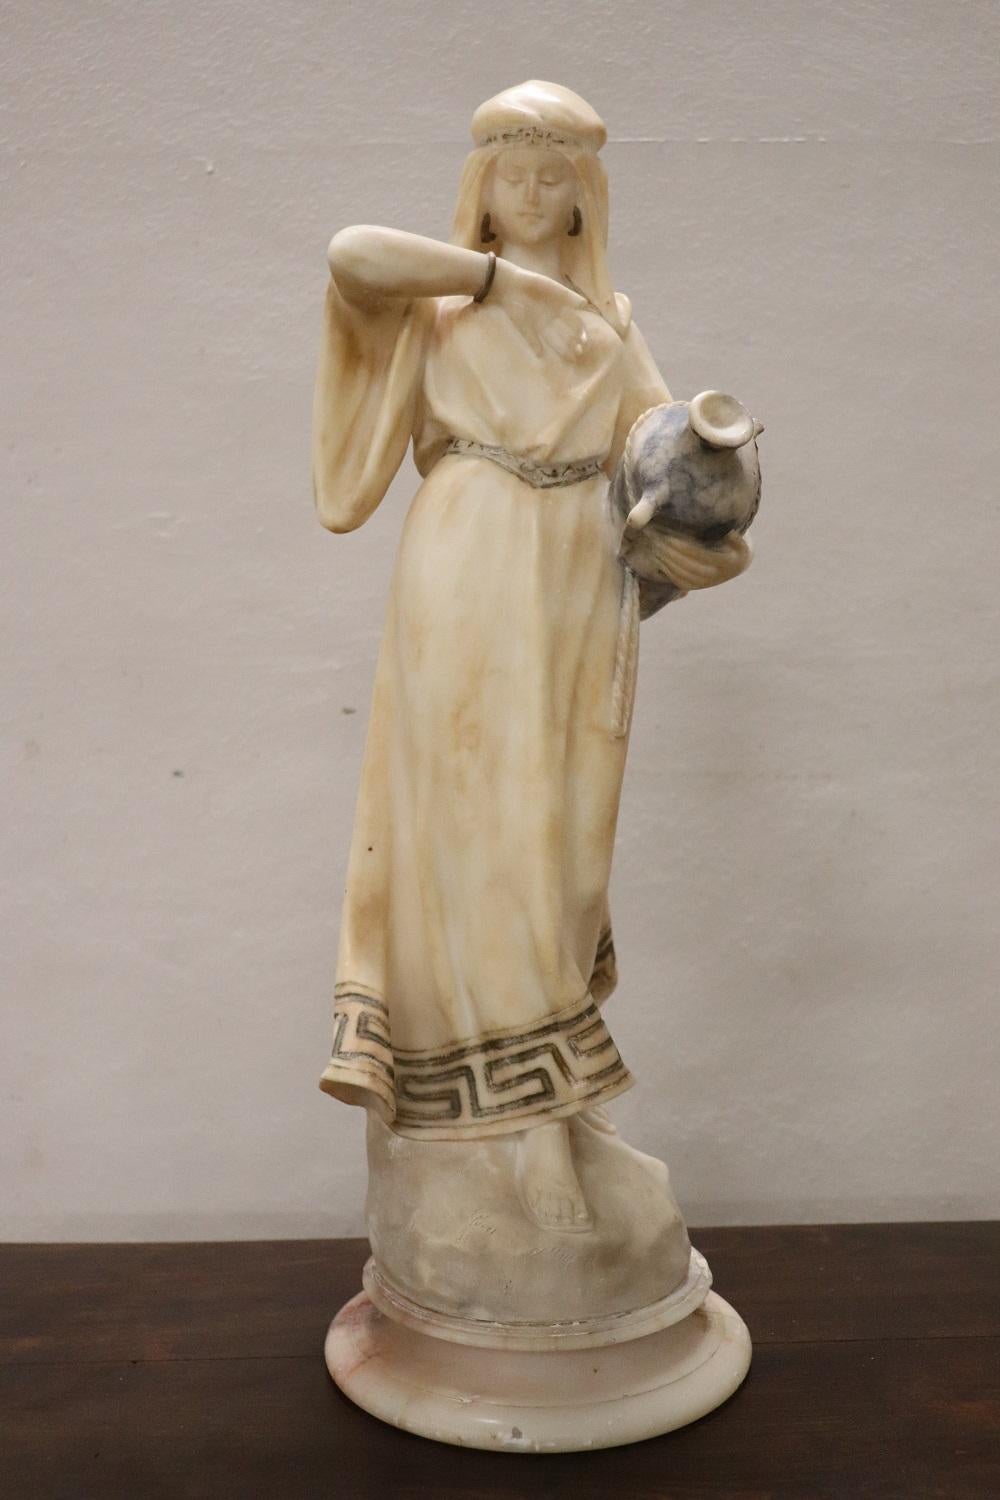 Seltene Art-Déco-Skulptur aus italienischem Carrara-Marmor. Große künstlerische Qualität, nicht signiert. Eine schöne junge Frau mit einer Amphore in der Hand. Achtung, es gibt zwei Mängel: ein fehlender Finger und ein Henkel der Amphora.
   